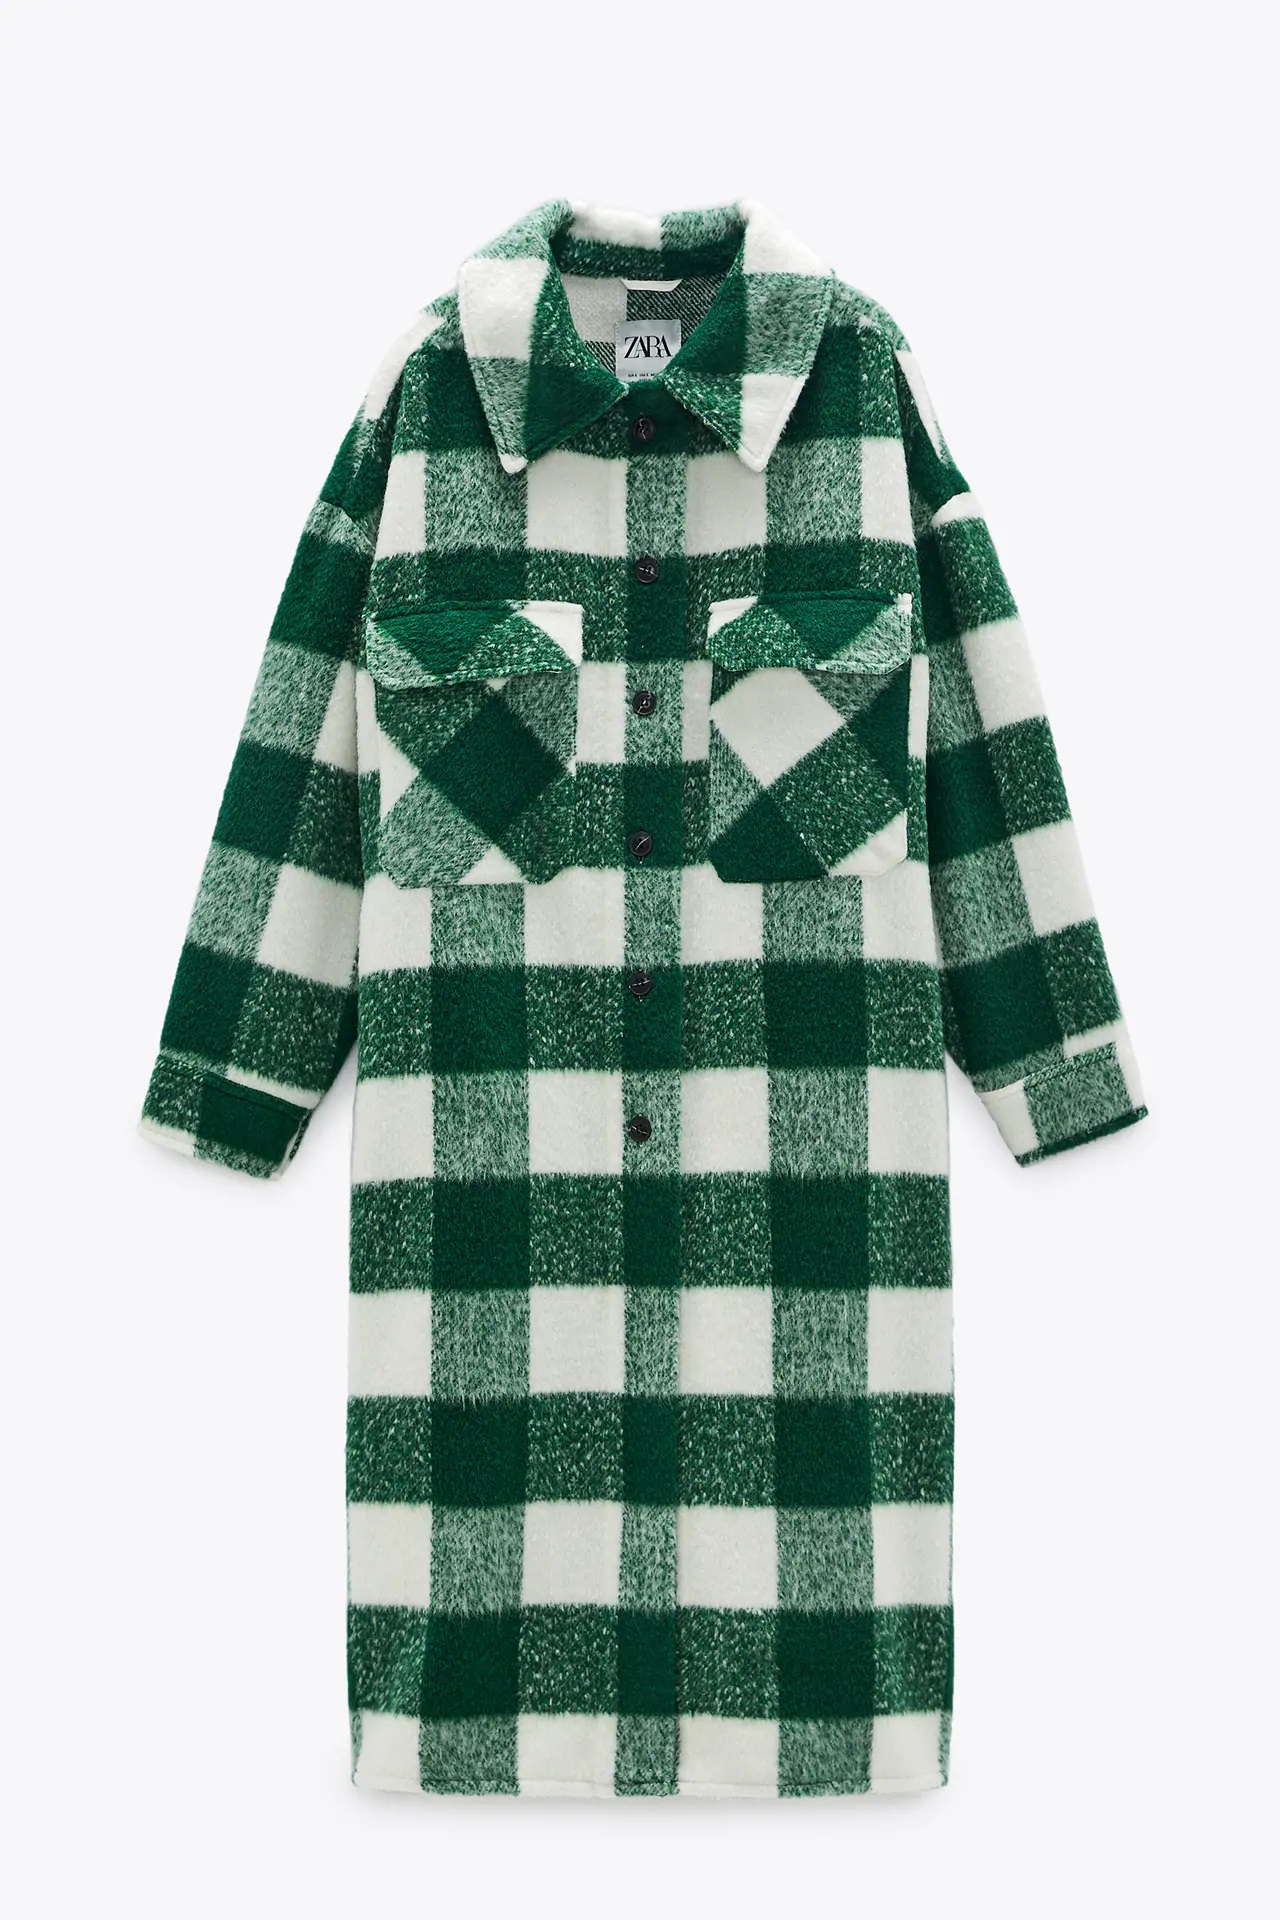 Zara: Este es el abrigo que más se otoño-invierno | Moda